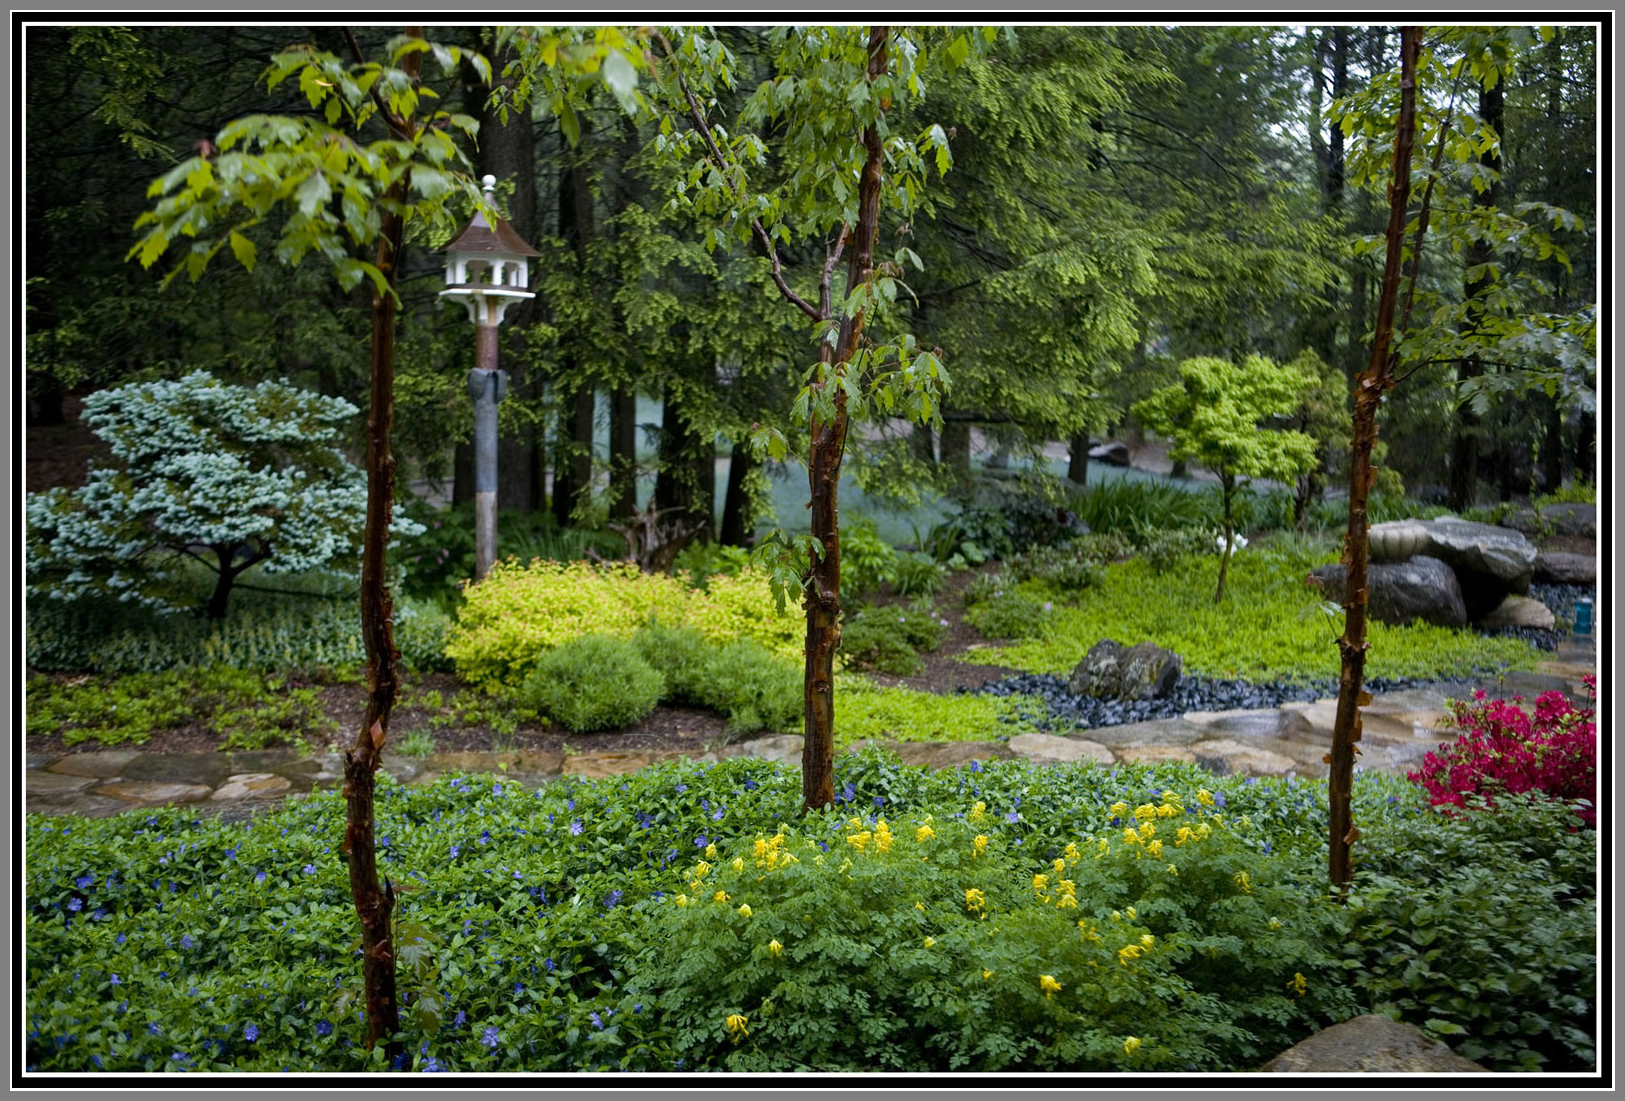 Zen Garden with simplicity